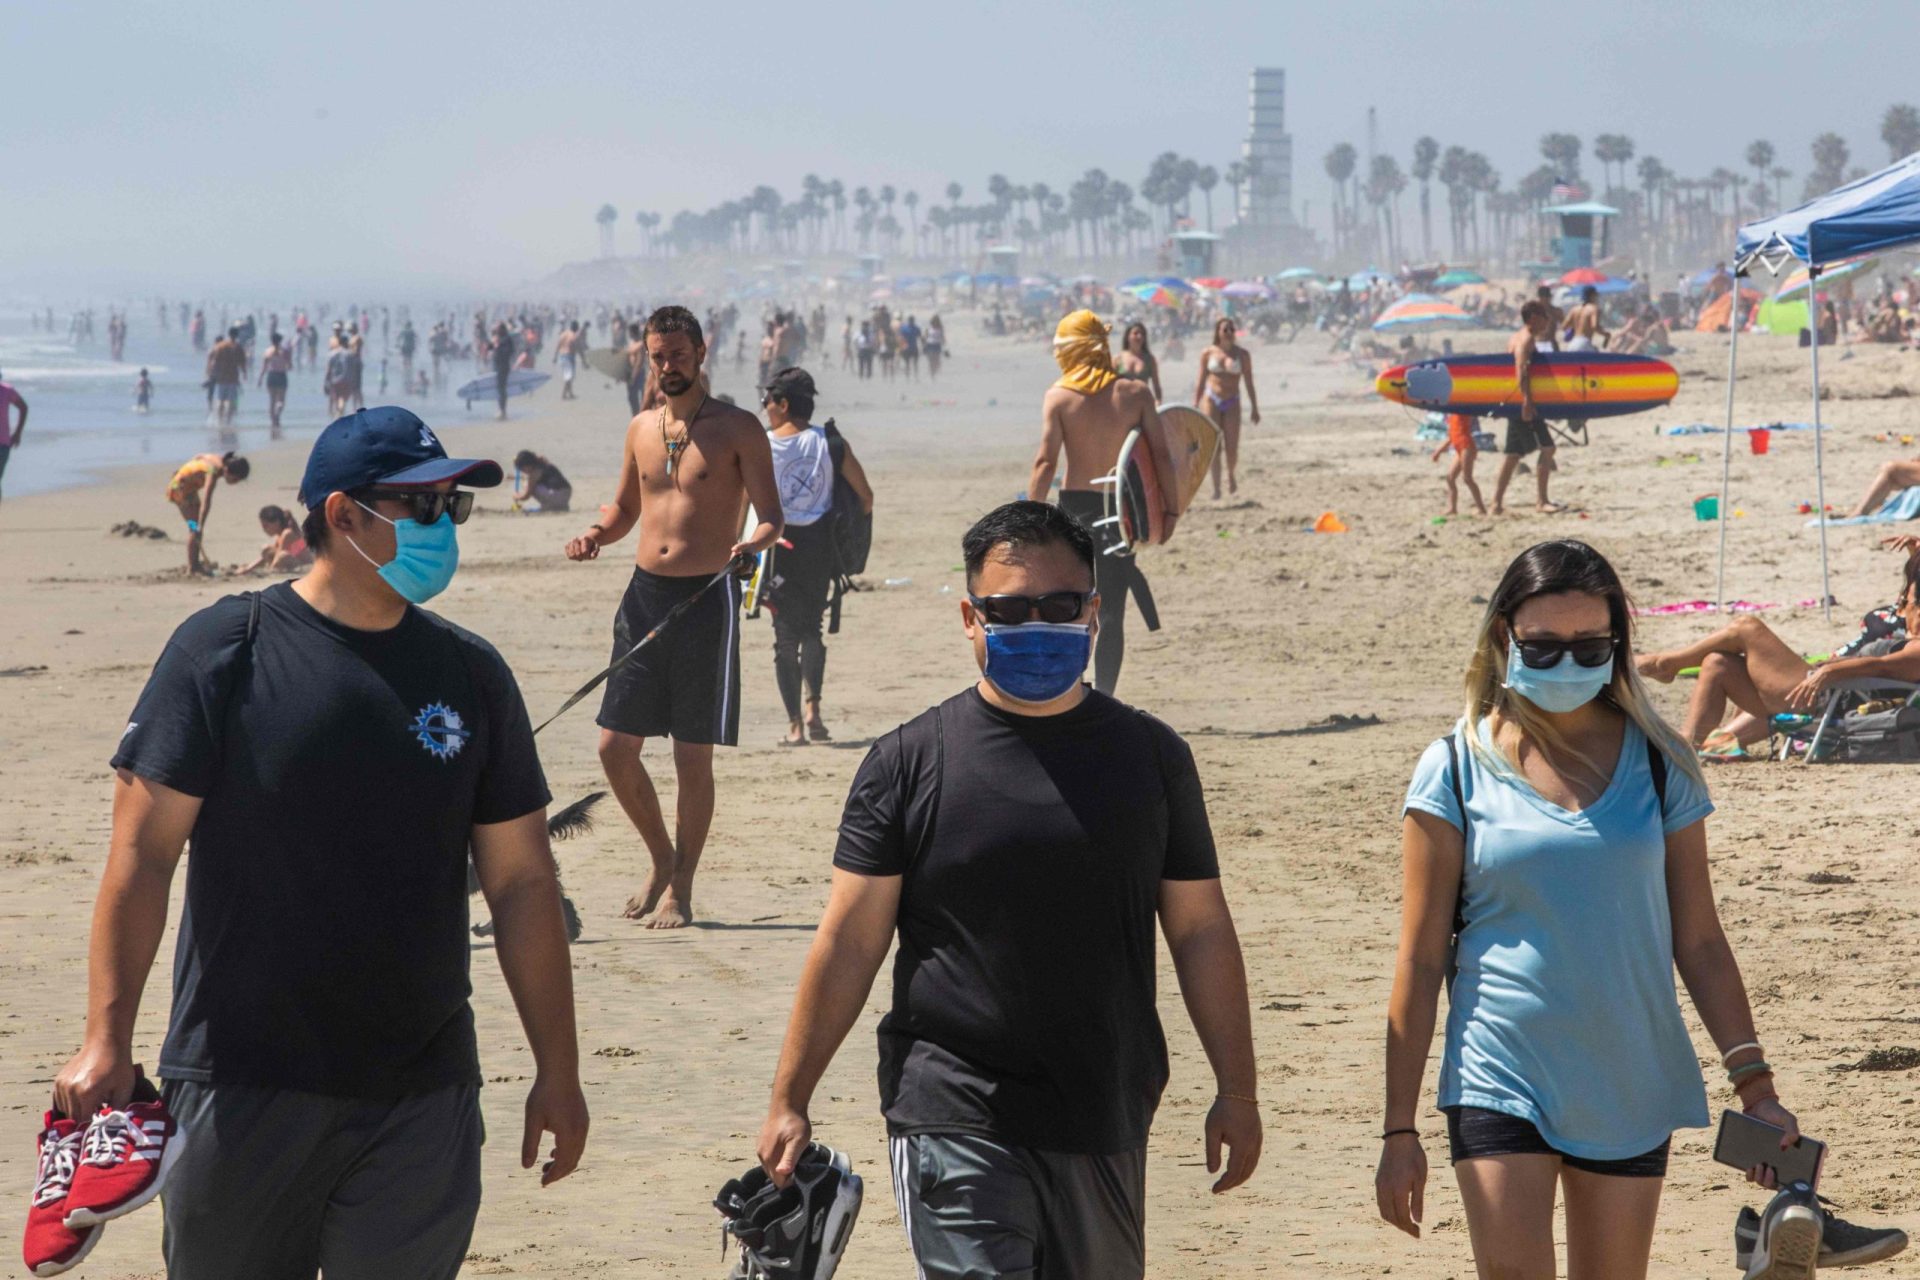 Uso de máscaras obrigatório ao ar livre? “É uma hipótese sempre em aberto”